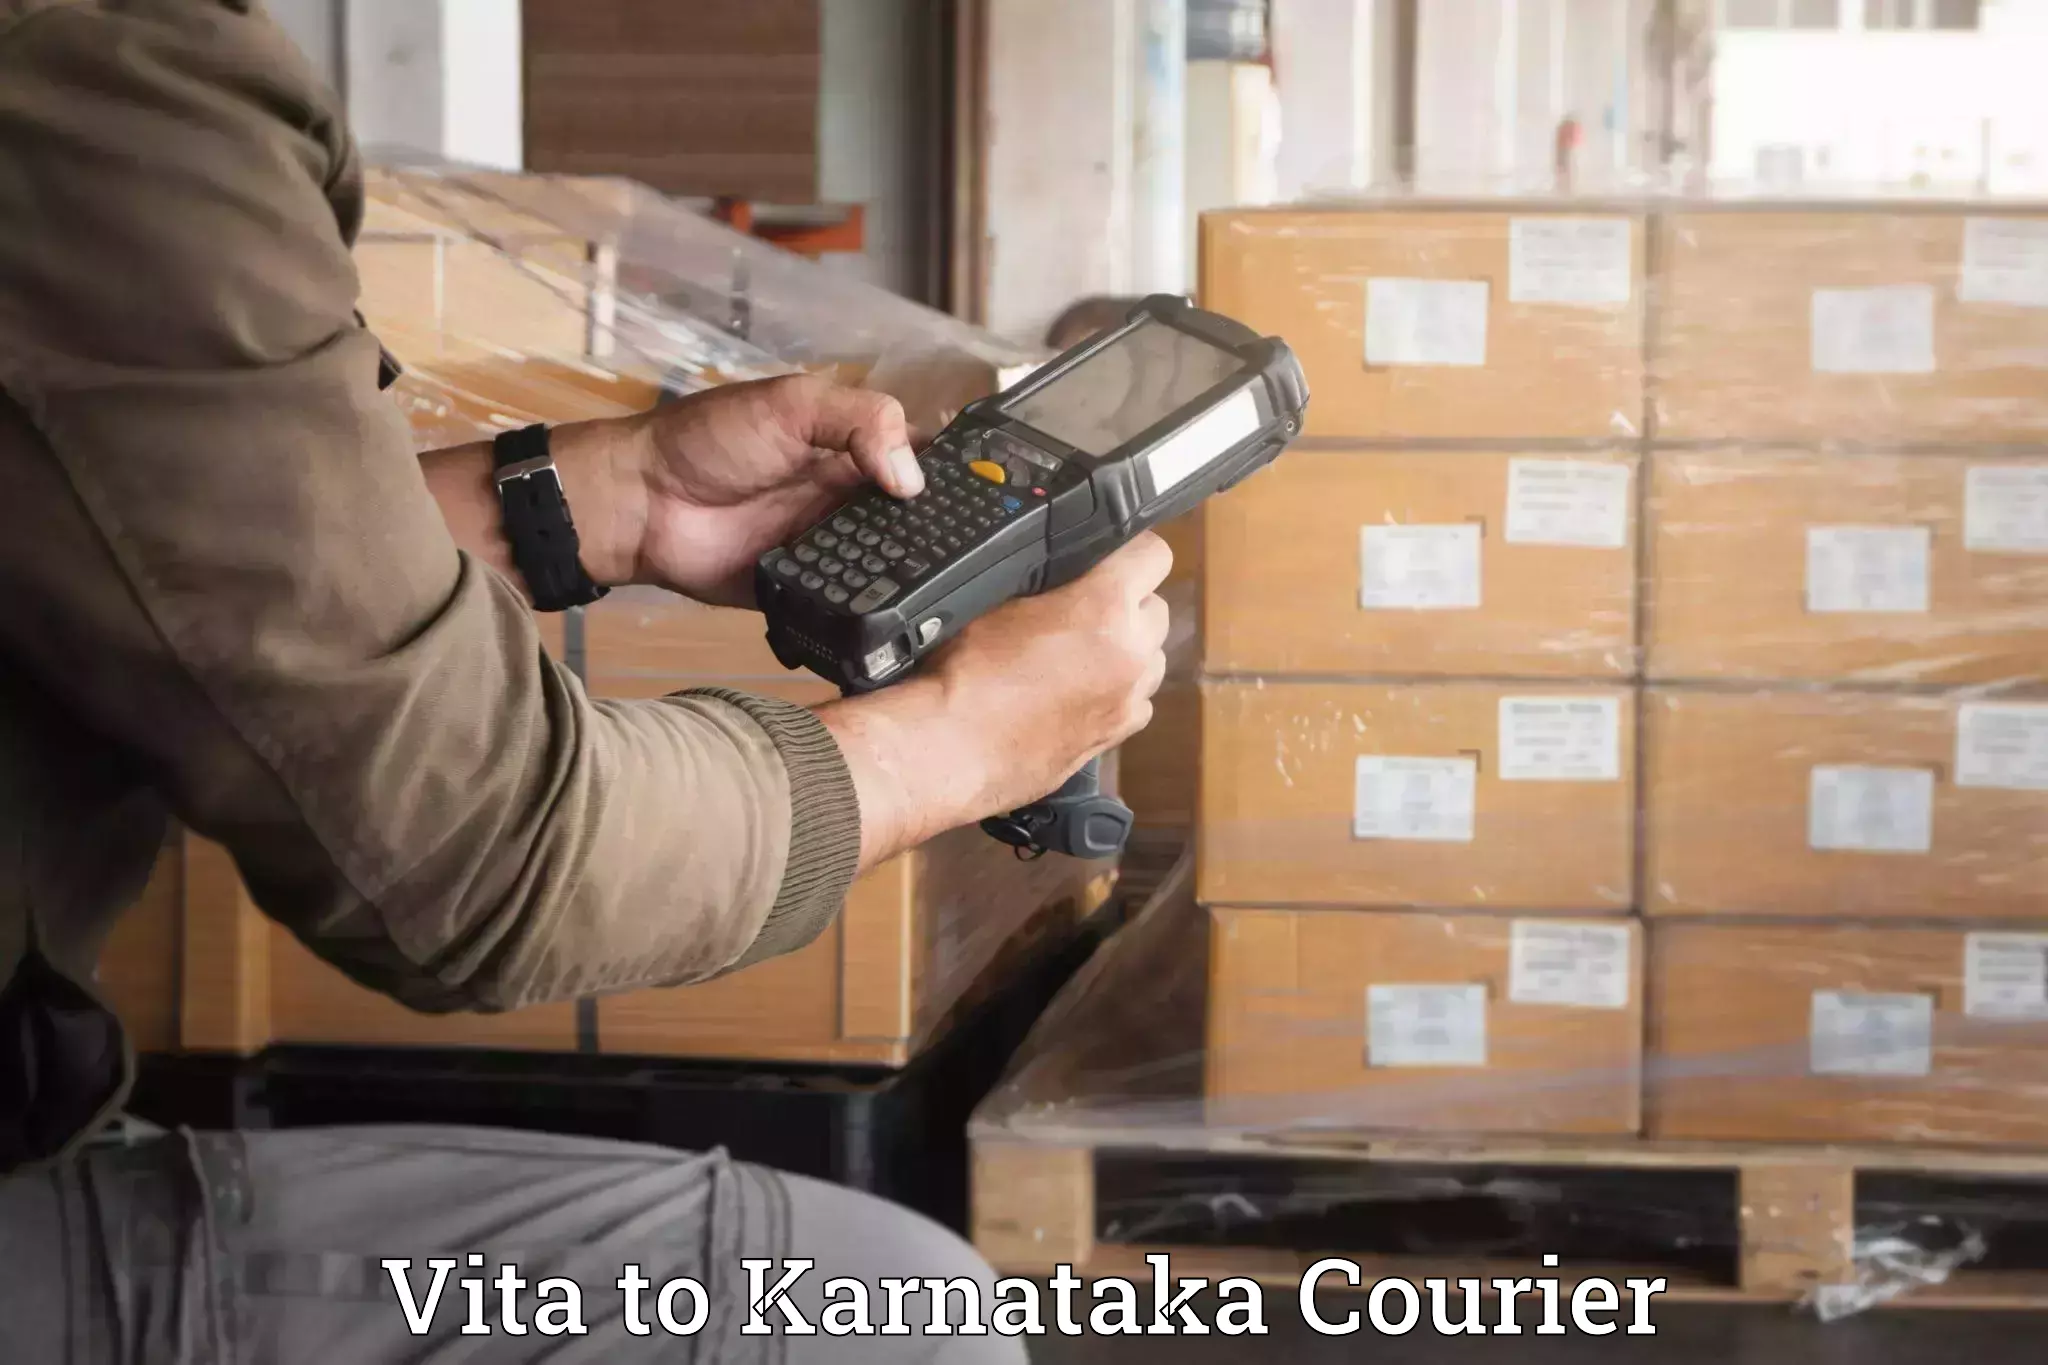 Luggage delivery system Vita to Karnataka